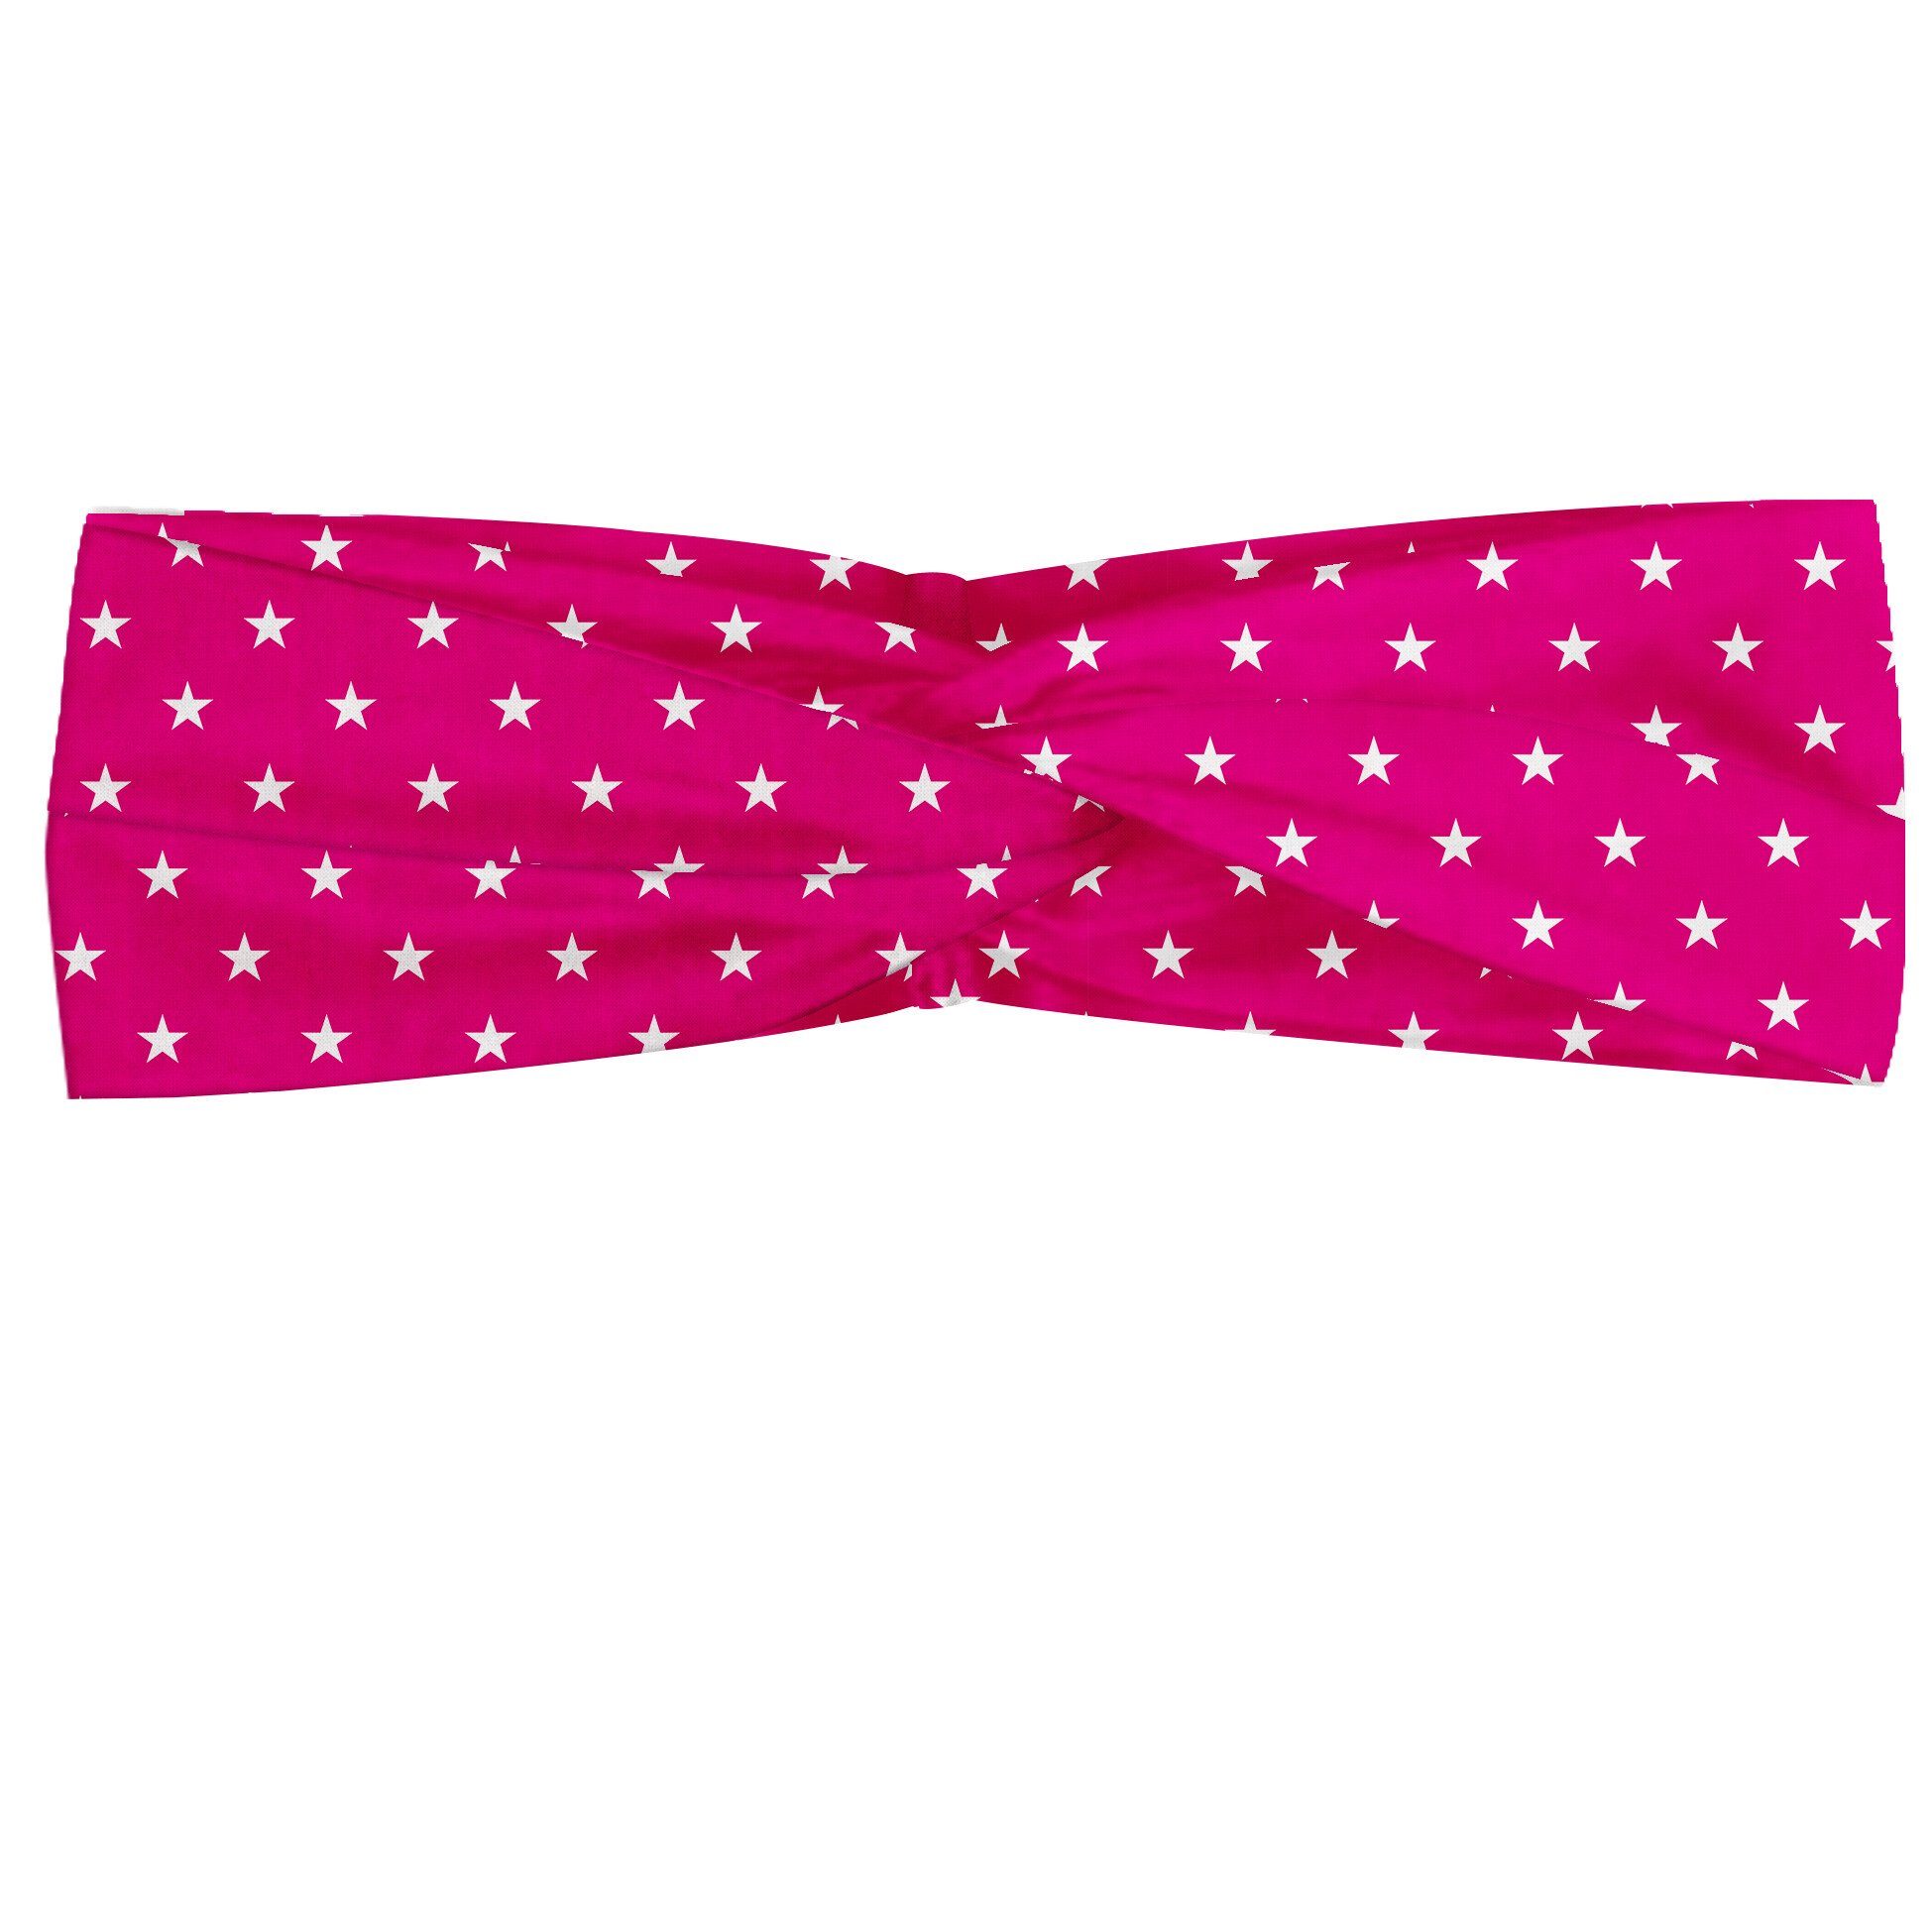 Abakuhaus Stirnband Elastisch und Angenehme alltags accessories Hot Pink White Stars Girlish